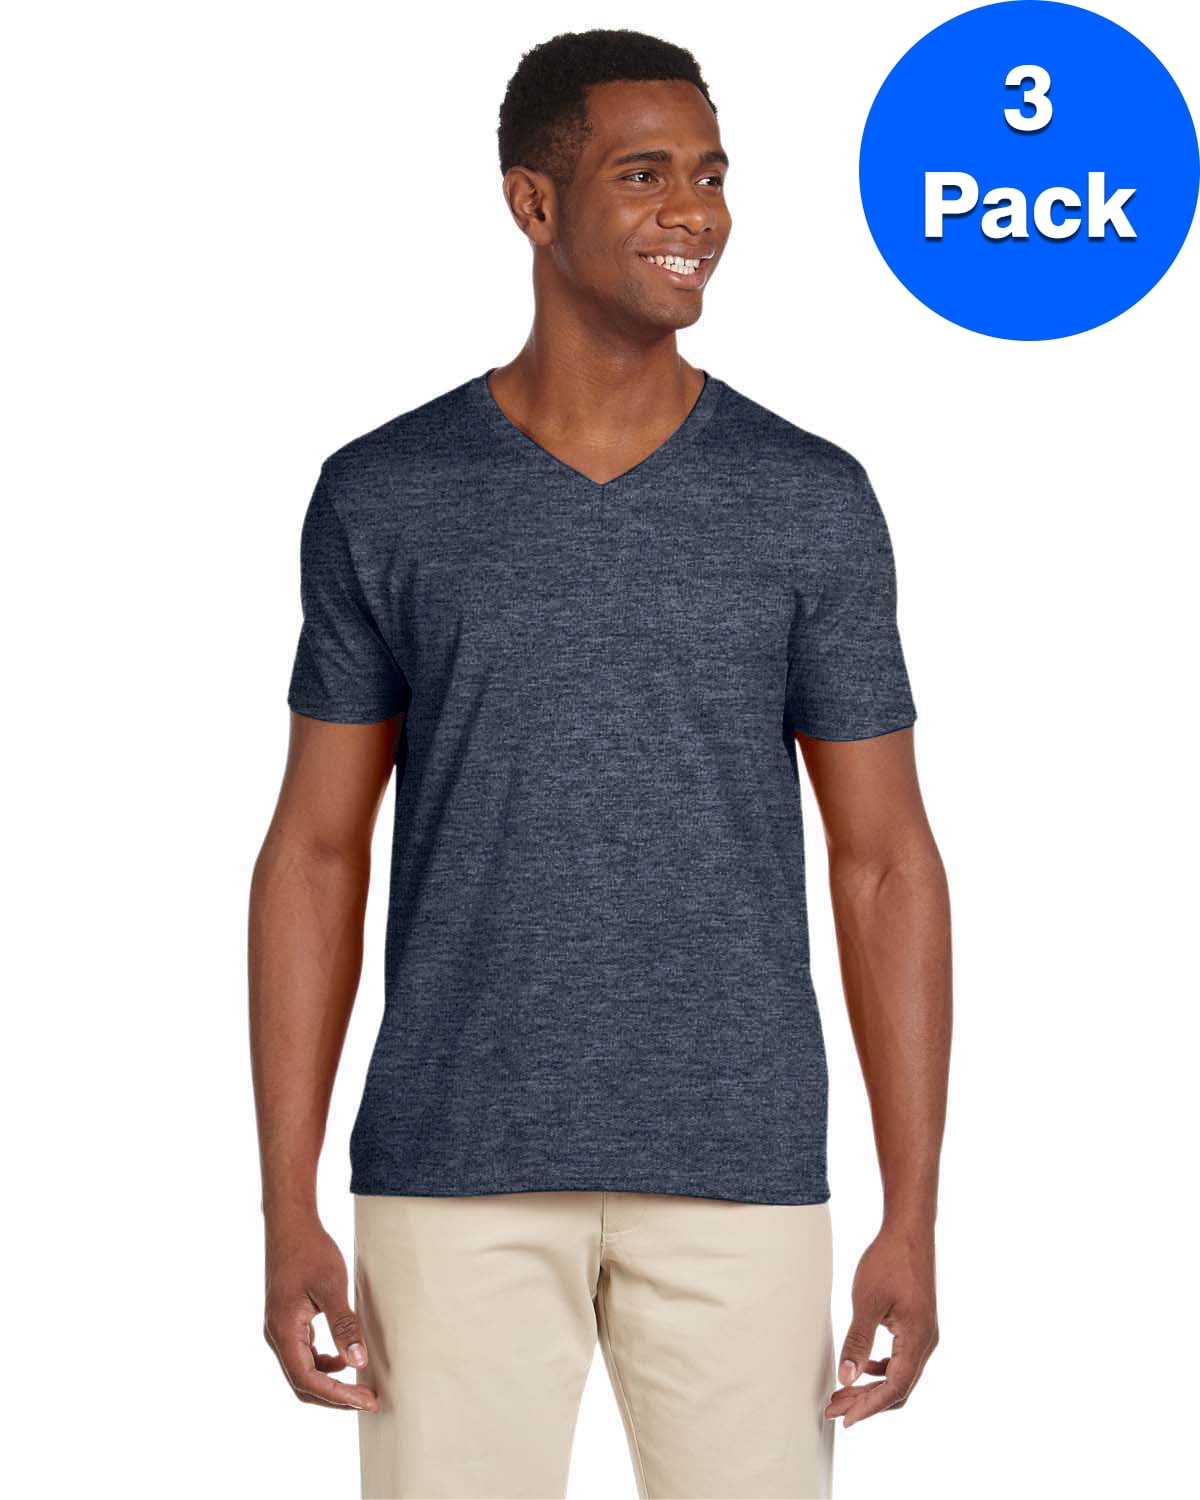 Mens 4.5 oz SoftStyle V-Neck T-Shirt 3 Pack - Walmart.com